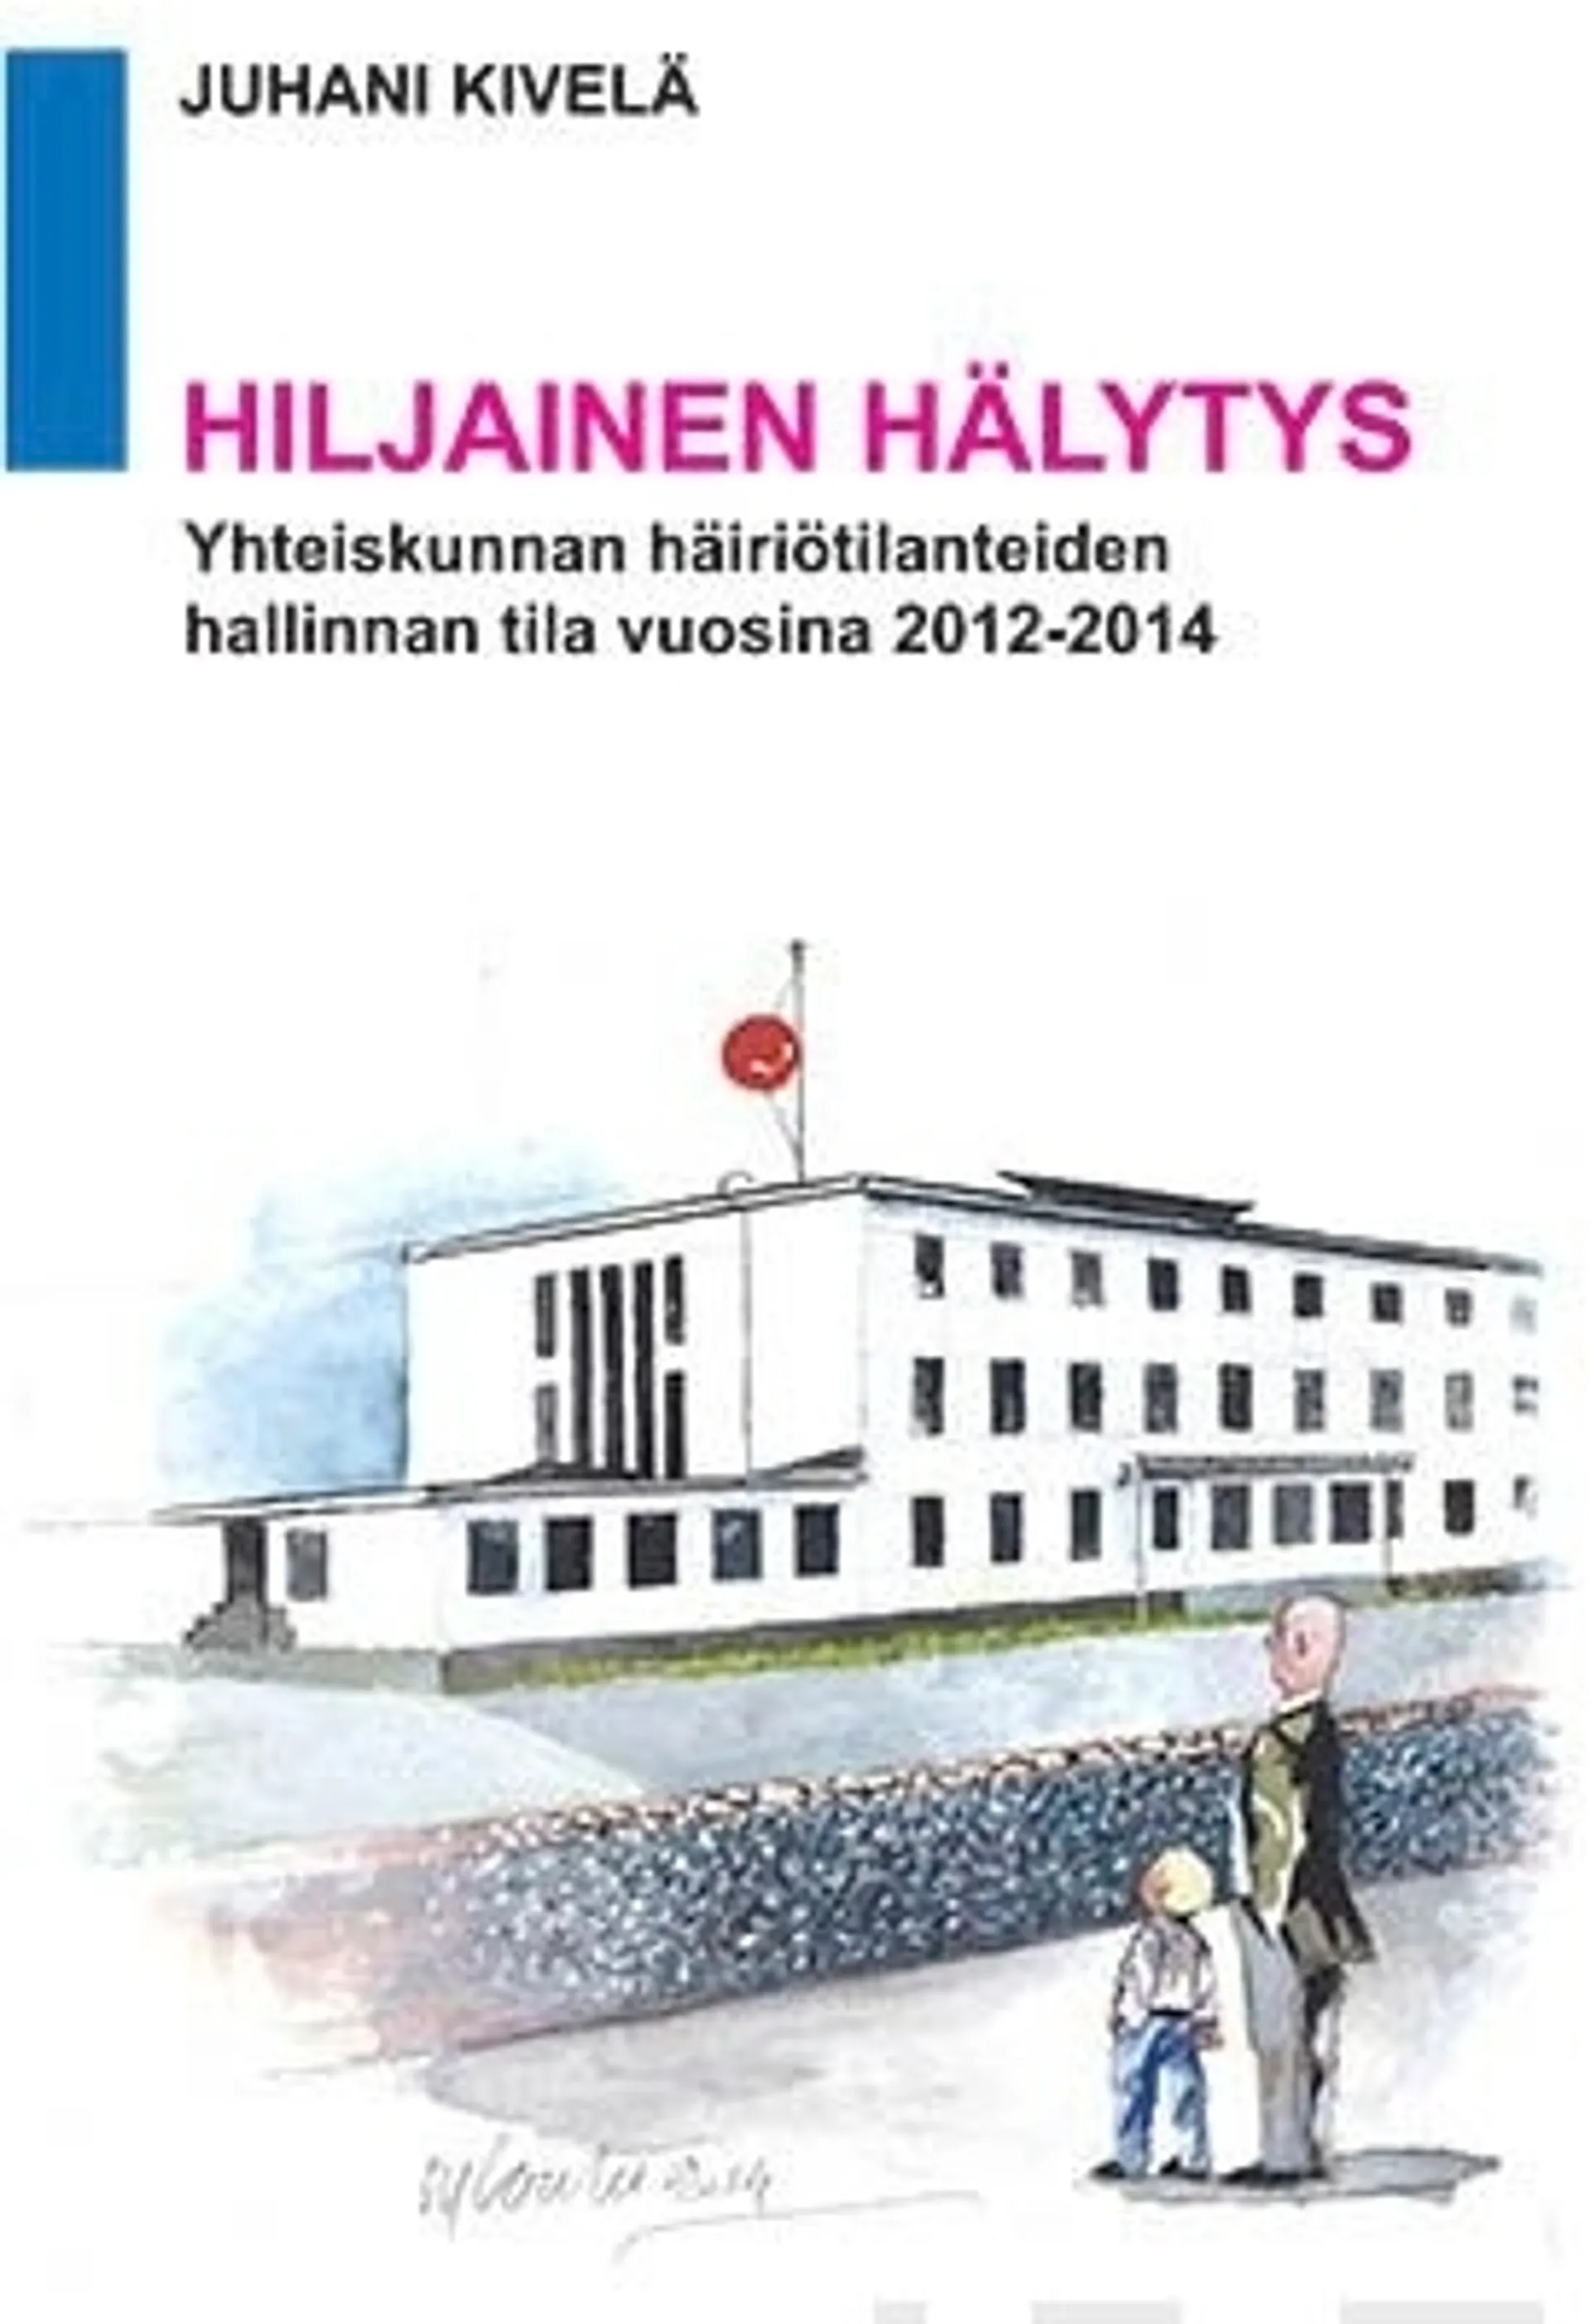 Kivelä, Hiljainen hälytys - Yhteiskunnan häiriötilanteiden hallinnan tila vuosina 2012-2014